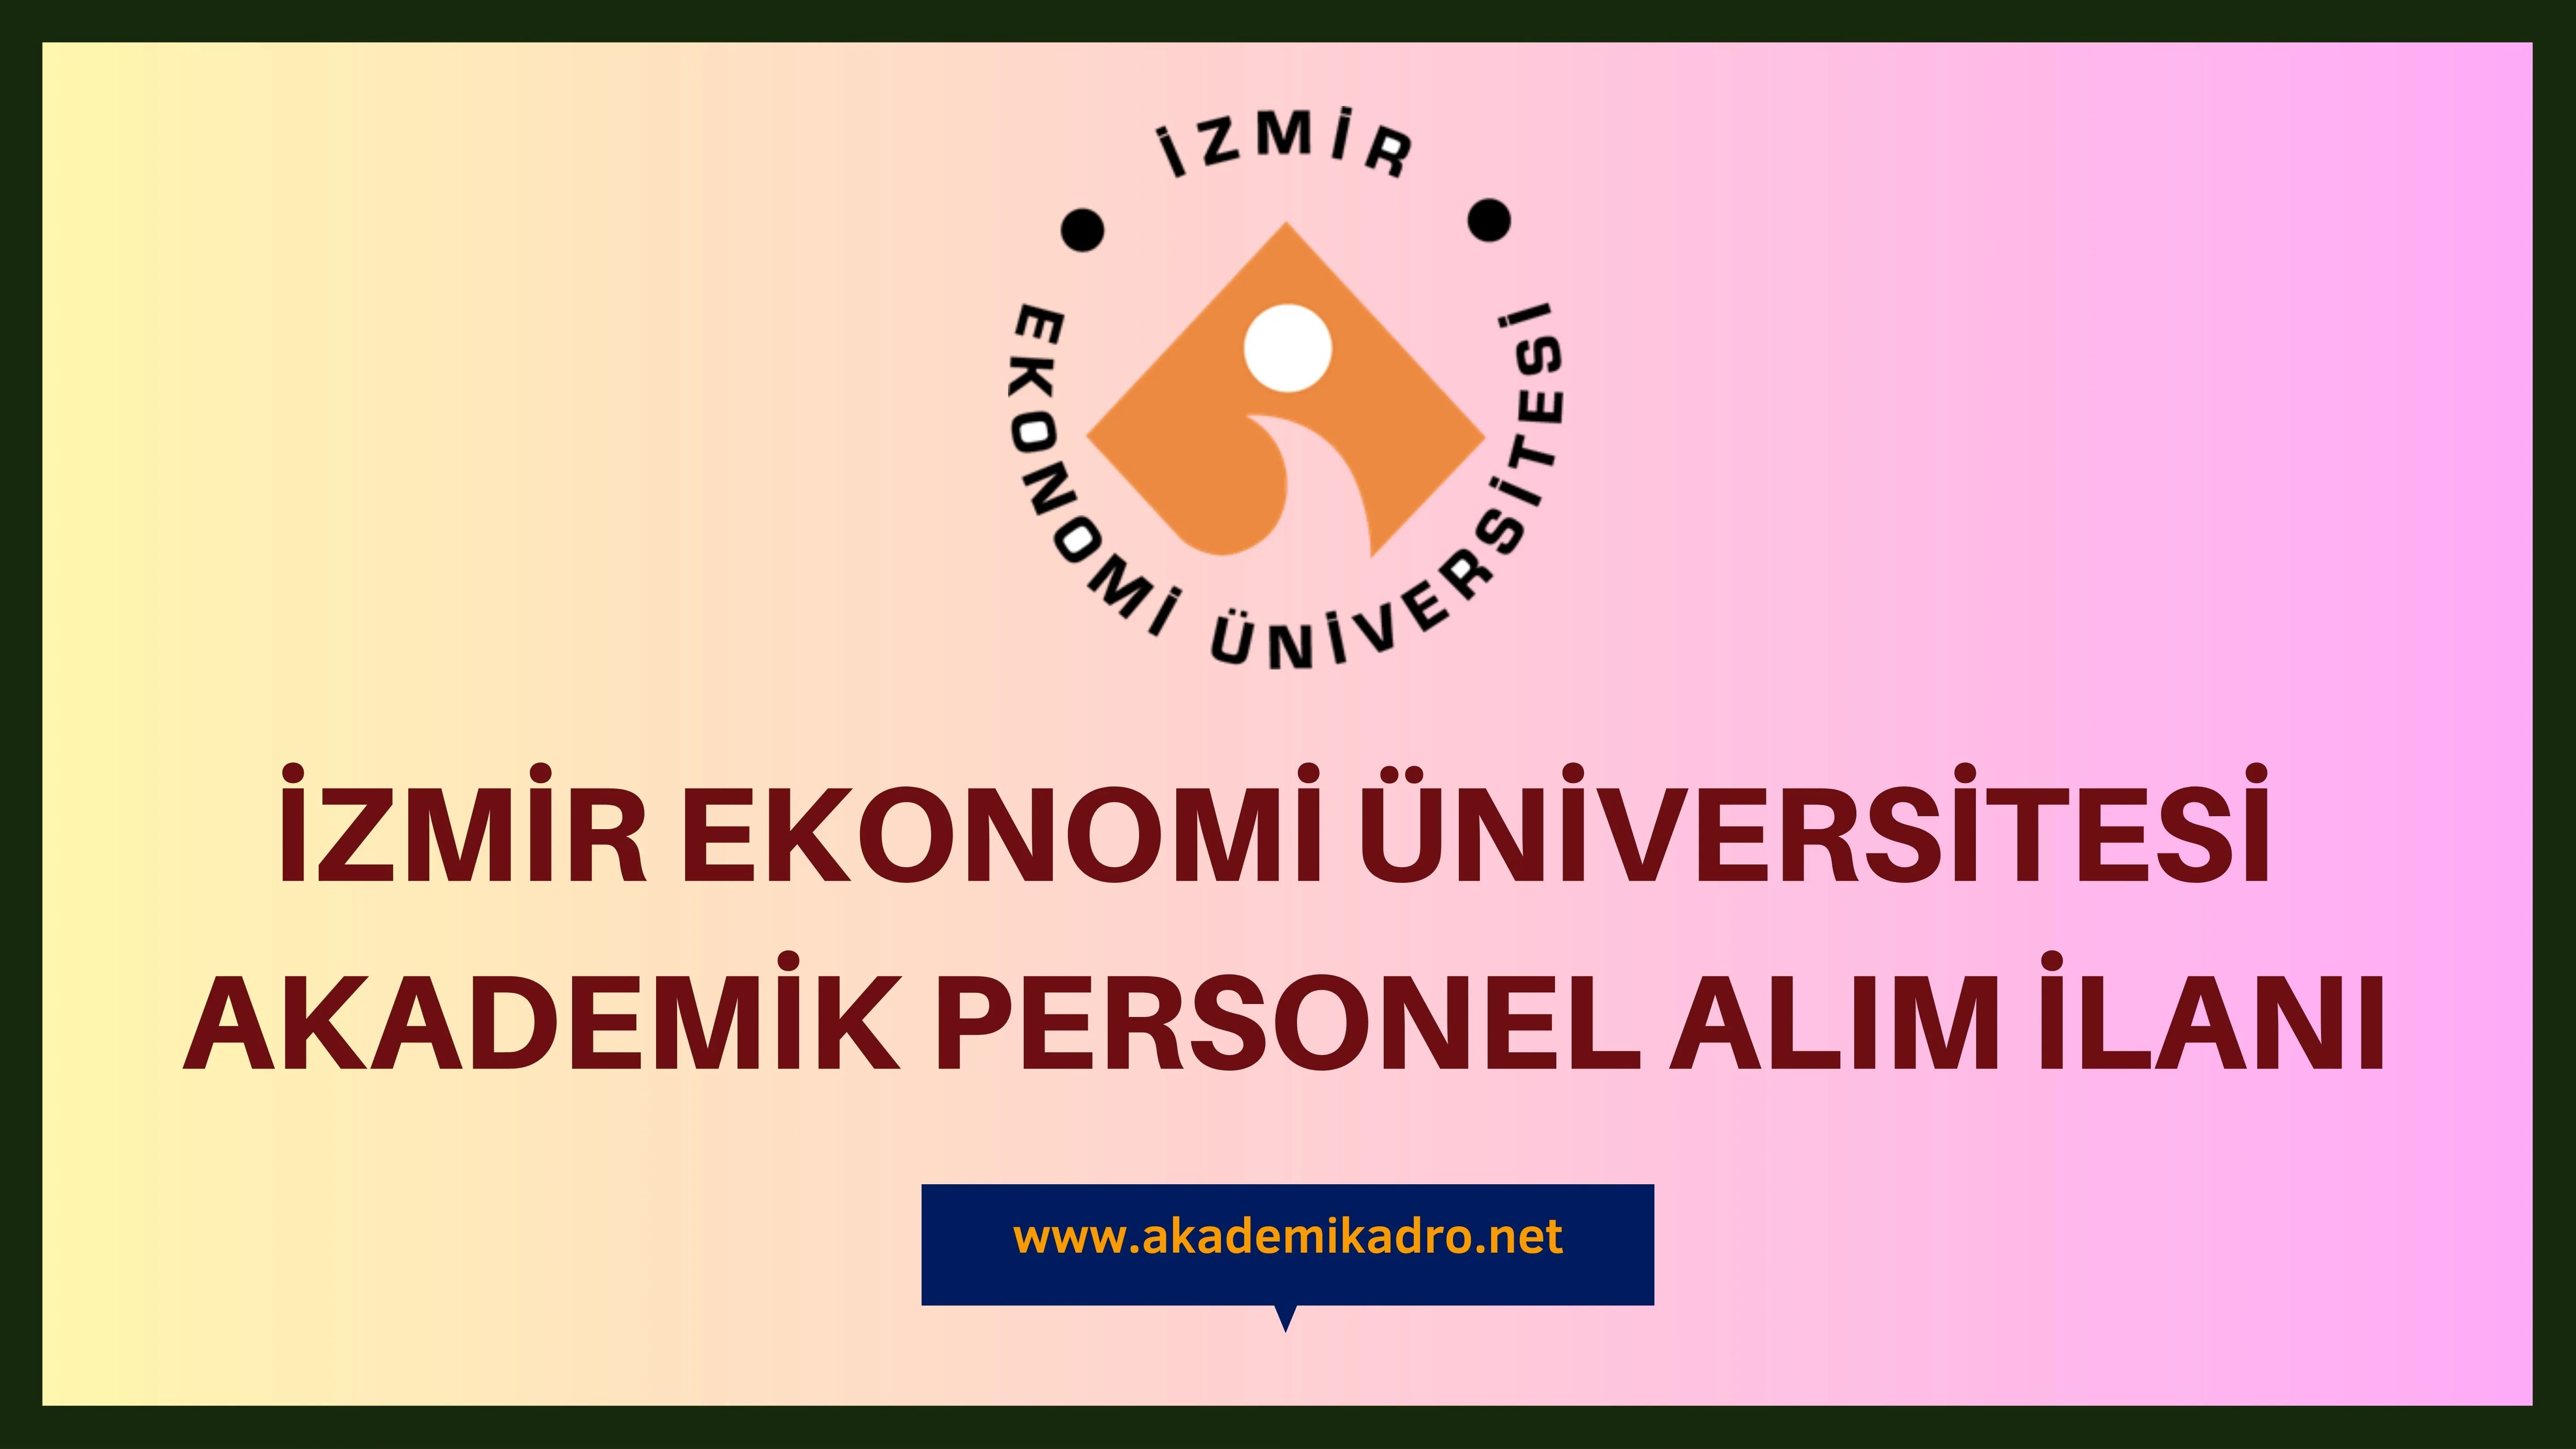 İzmir Ekonomi Üniversitesi birçok alandan 12 akademik personel alacak.